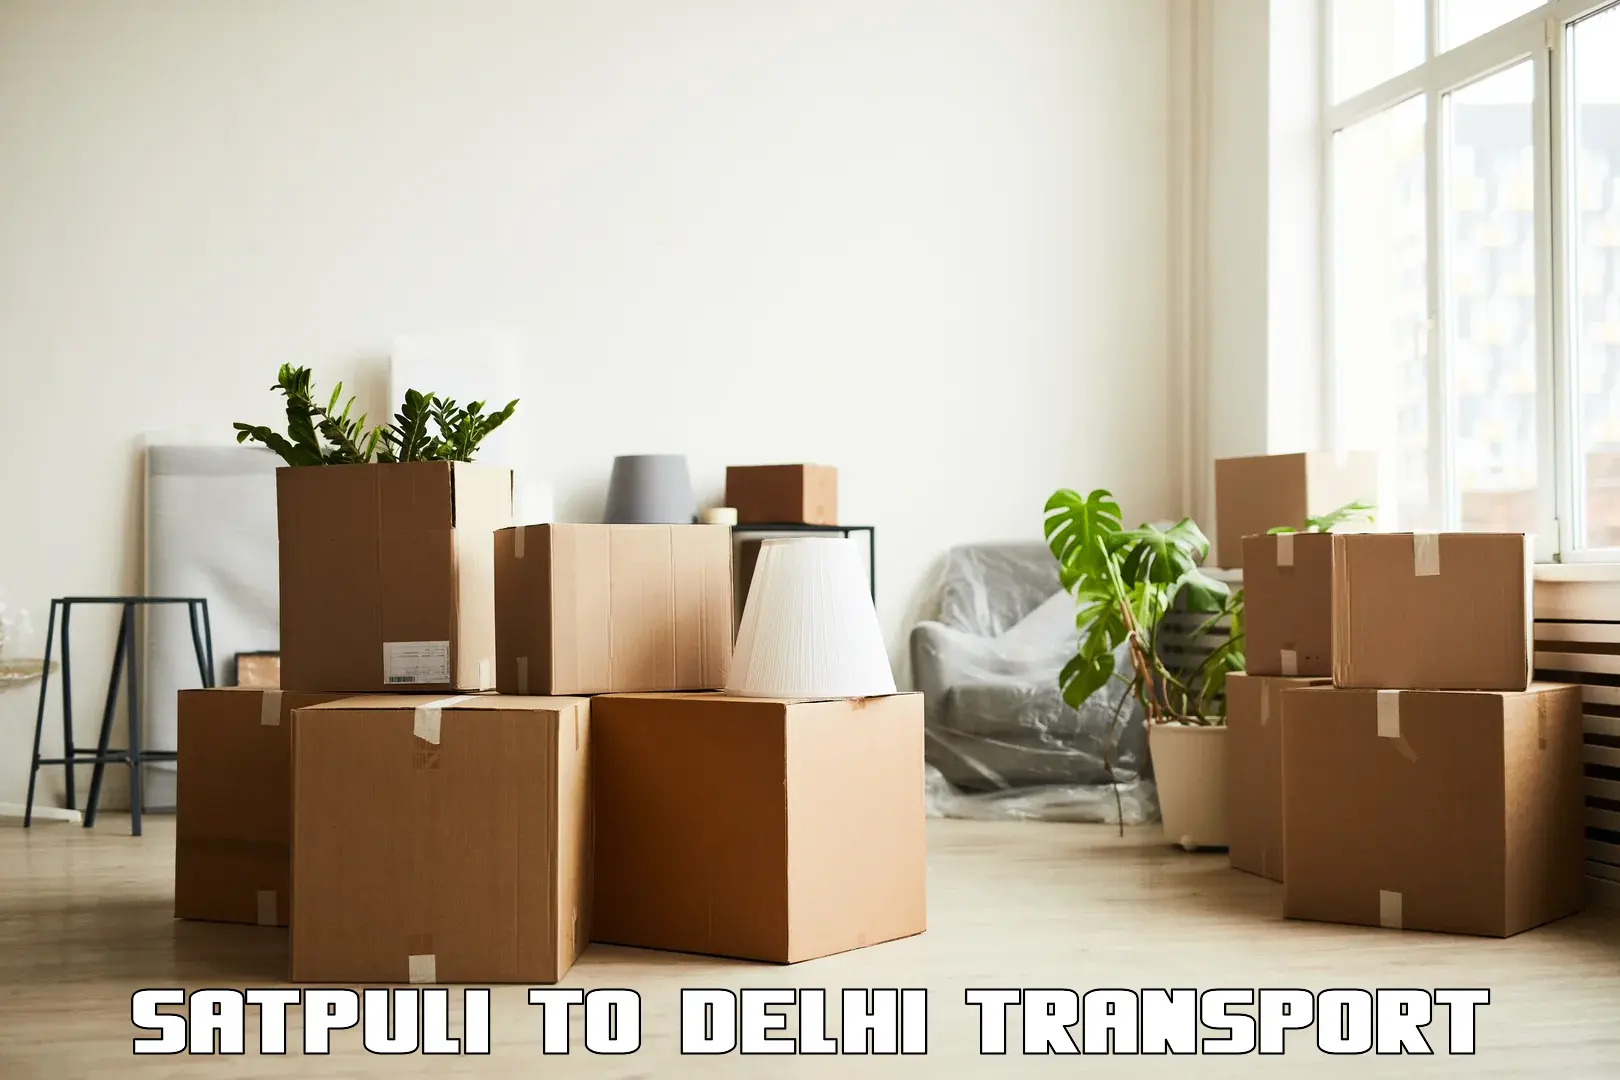 Vehicle parcel service Satpuli to Sansad Marg